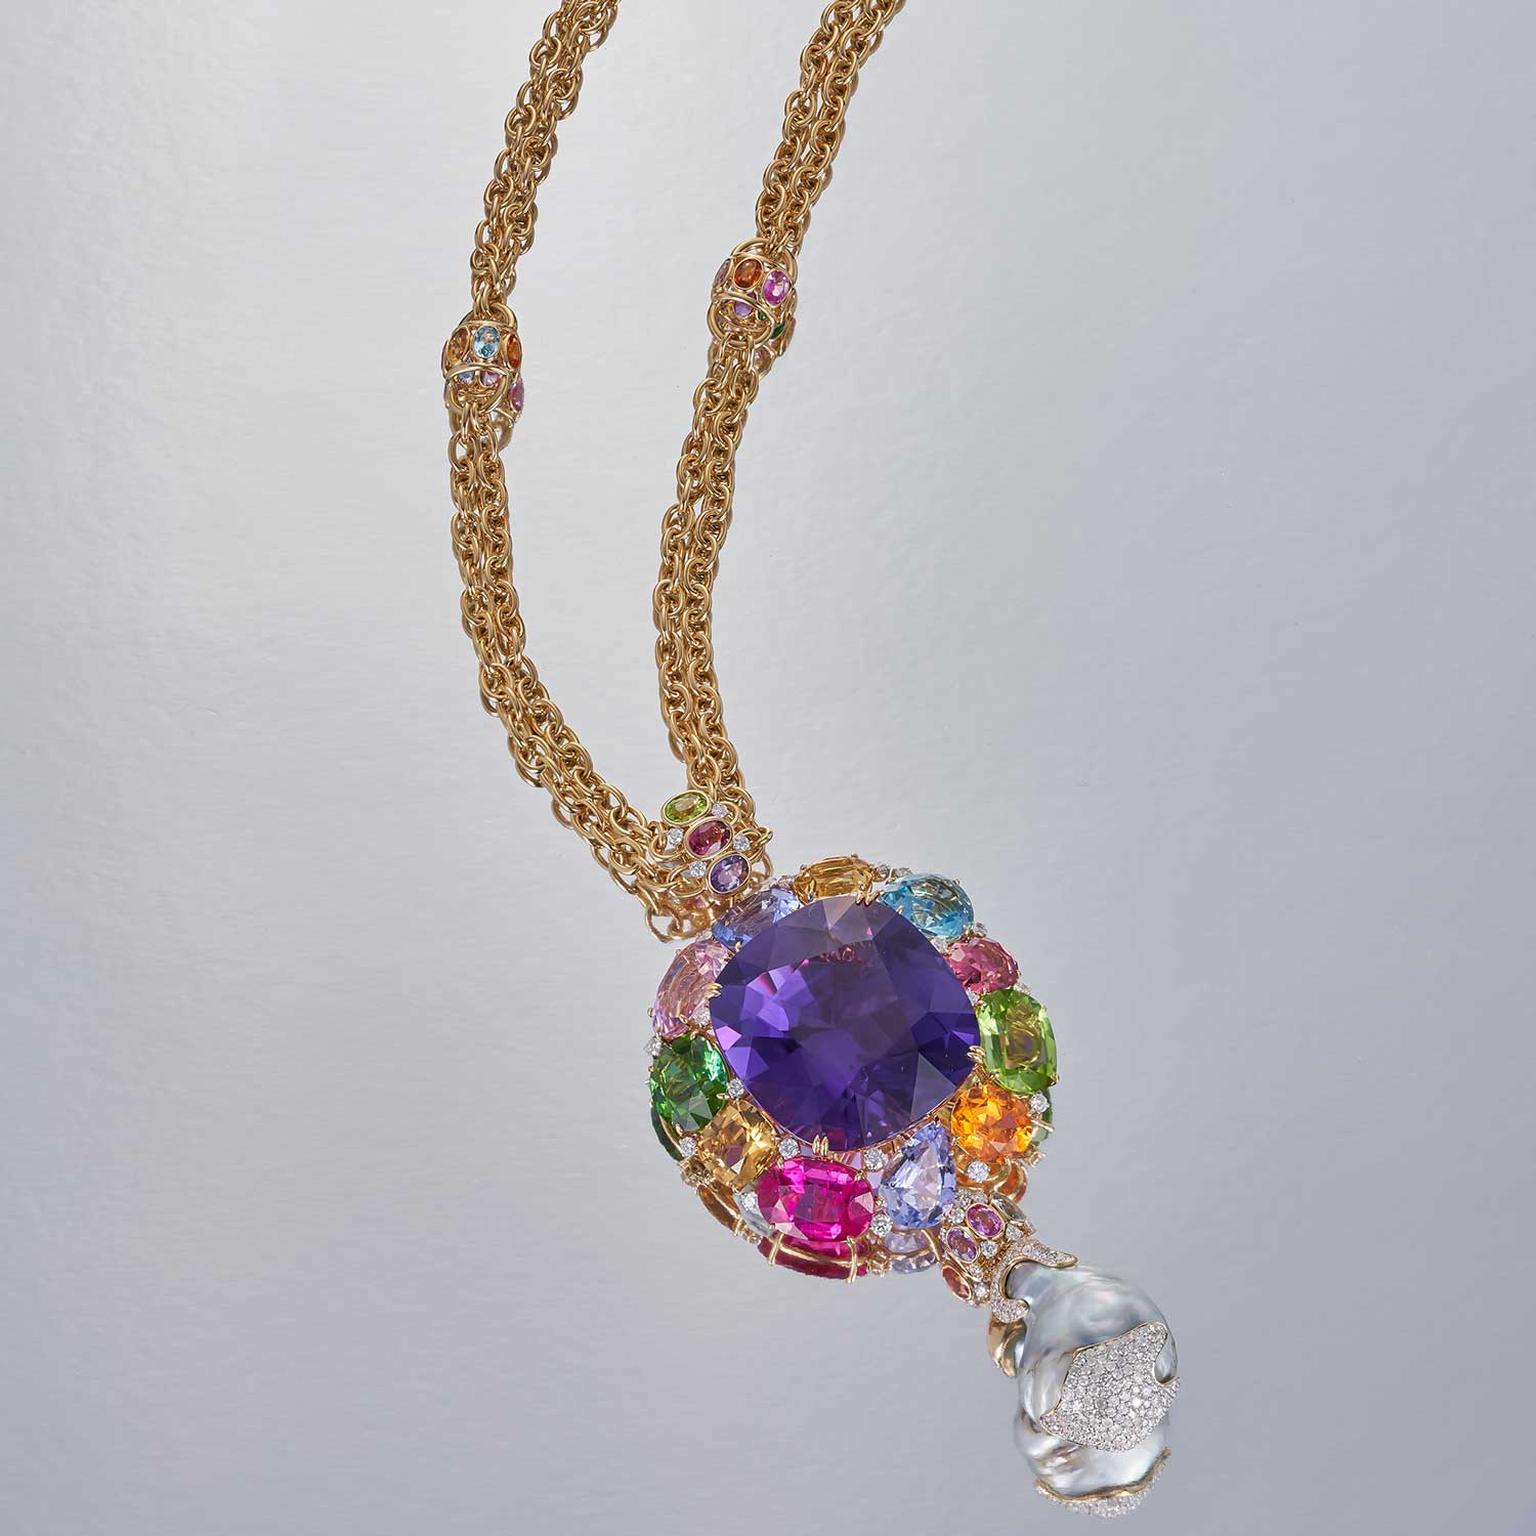 Margot McKinney 153 carat amethyst necklace